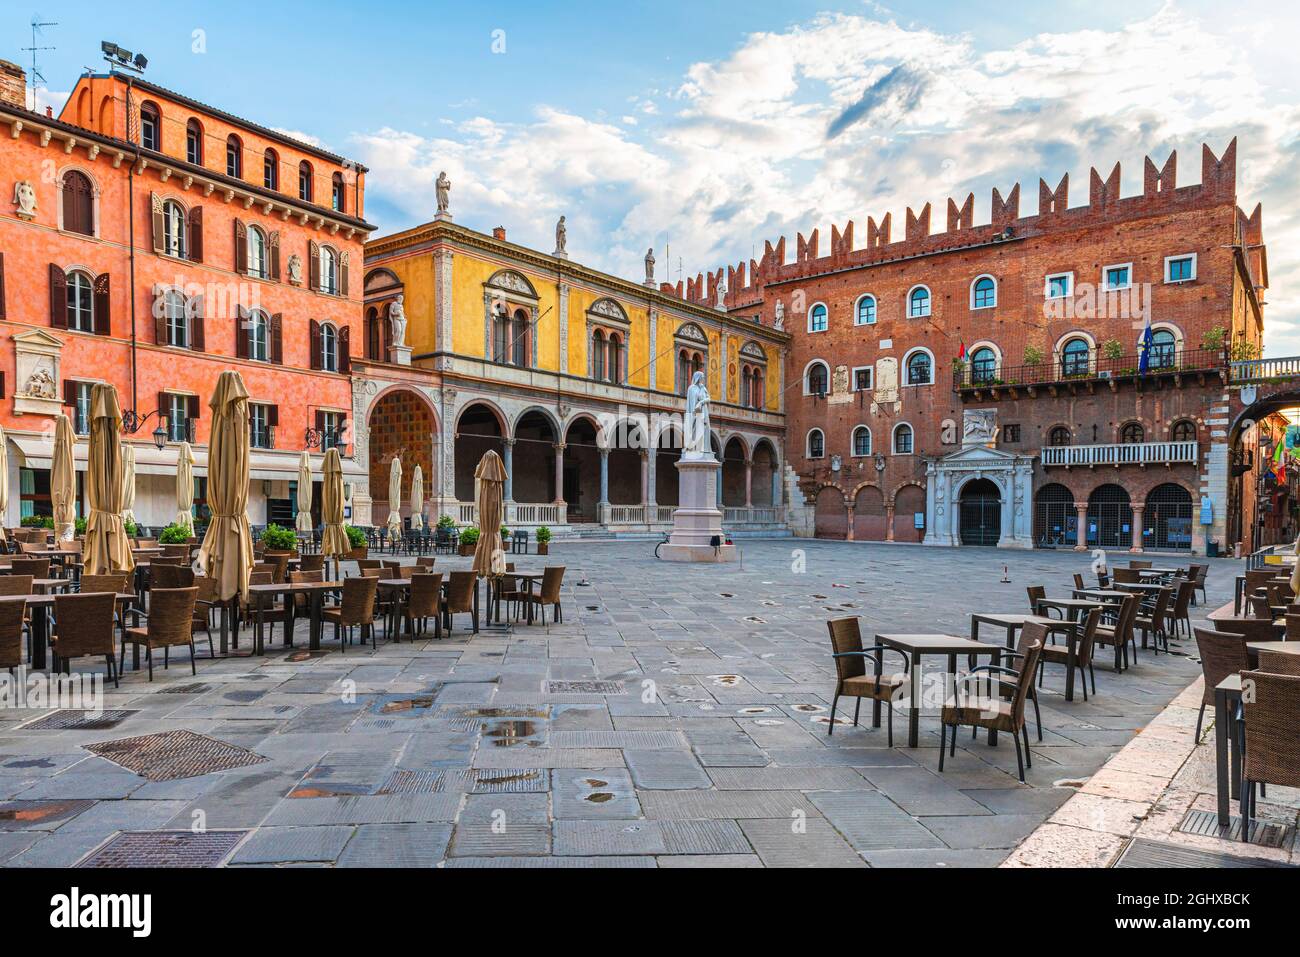 Piazza della città vecchia di Verona Piazza dei Signori con la statua di Dante e caffè di strada con nessuno. Veneto, Italia. Destinazione turistica Foto Stock